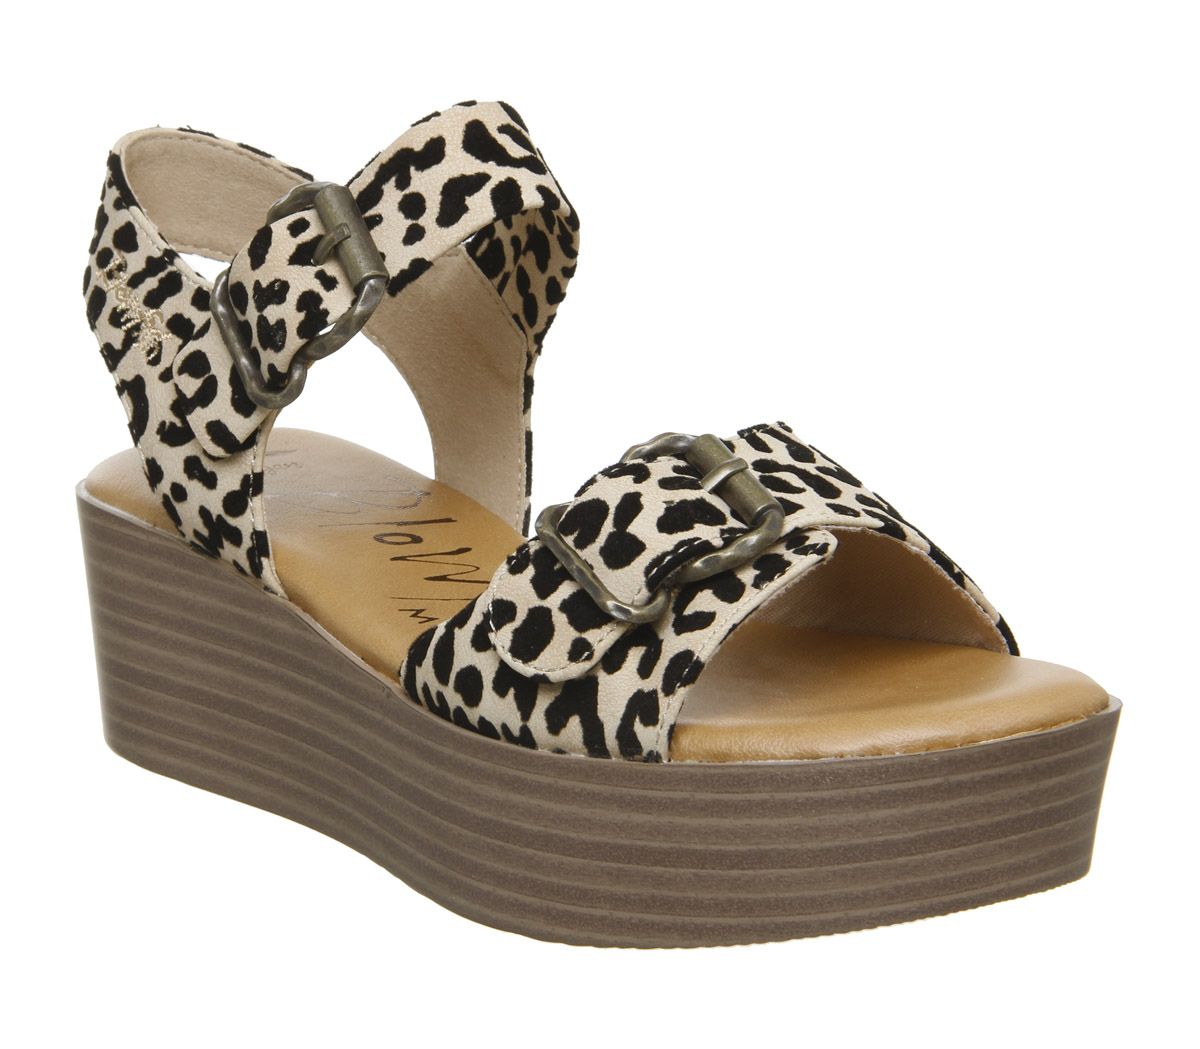 Blowfish Malibu Leeds Sandals Natural Leopard Grasslands - Women’s Sandals